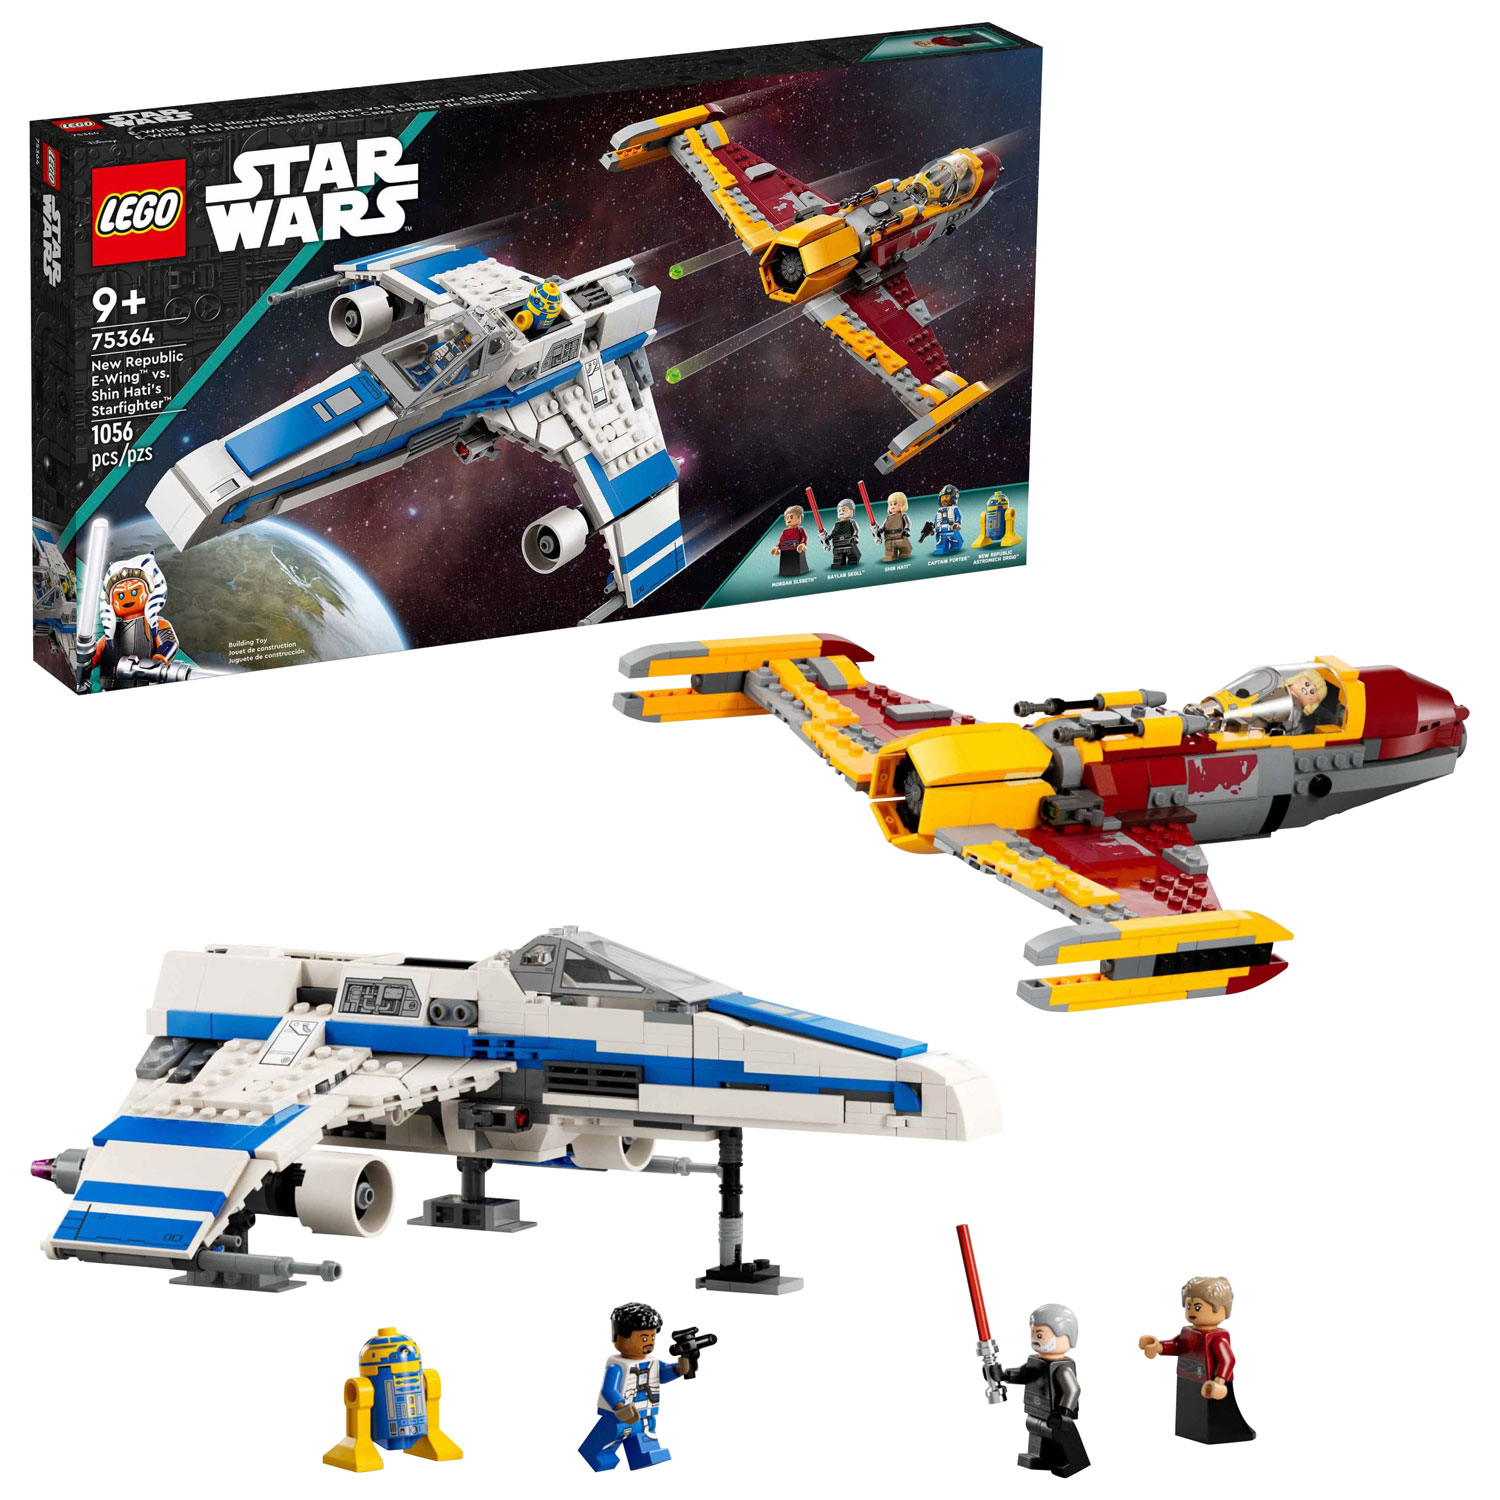 LEGO Star Wars: New Republic E-Wing vs. Shin Hati’s Starfighter - 1056 Pieces (75364)